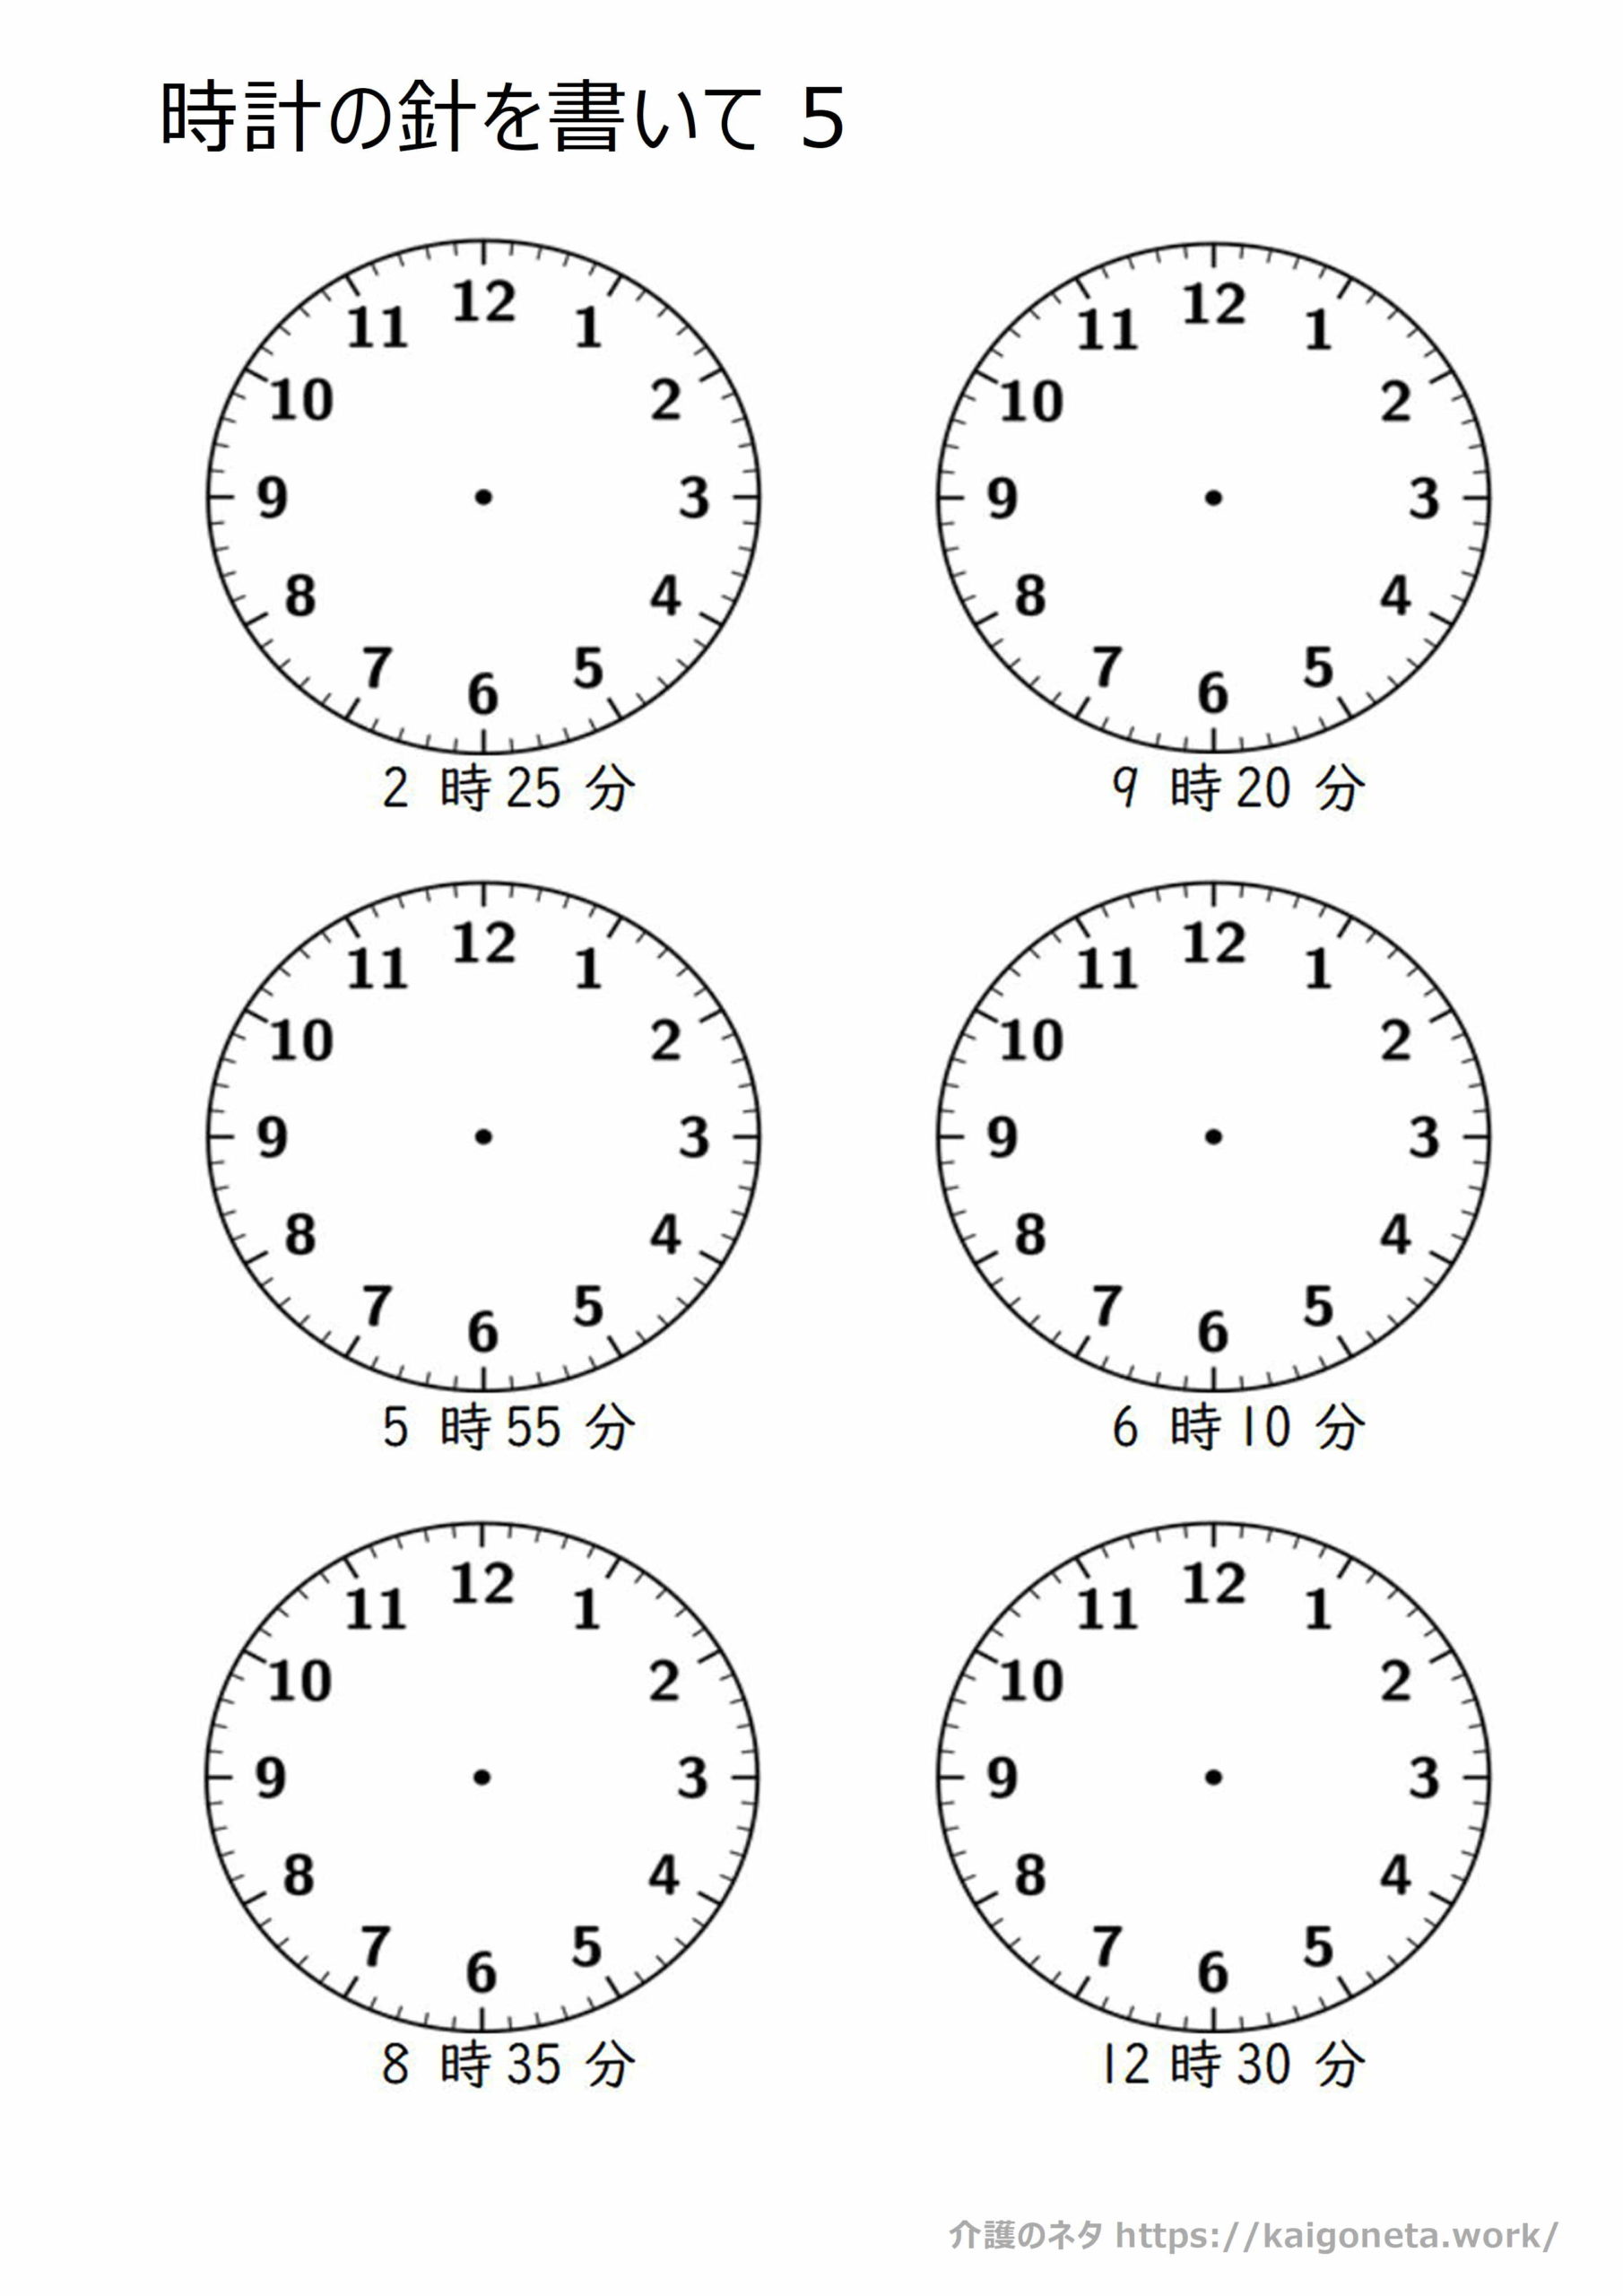 時計05 時計の針 無料素材 介護のネタ 認知症予防のための手作り脳トレ素材